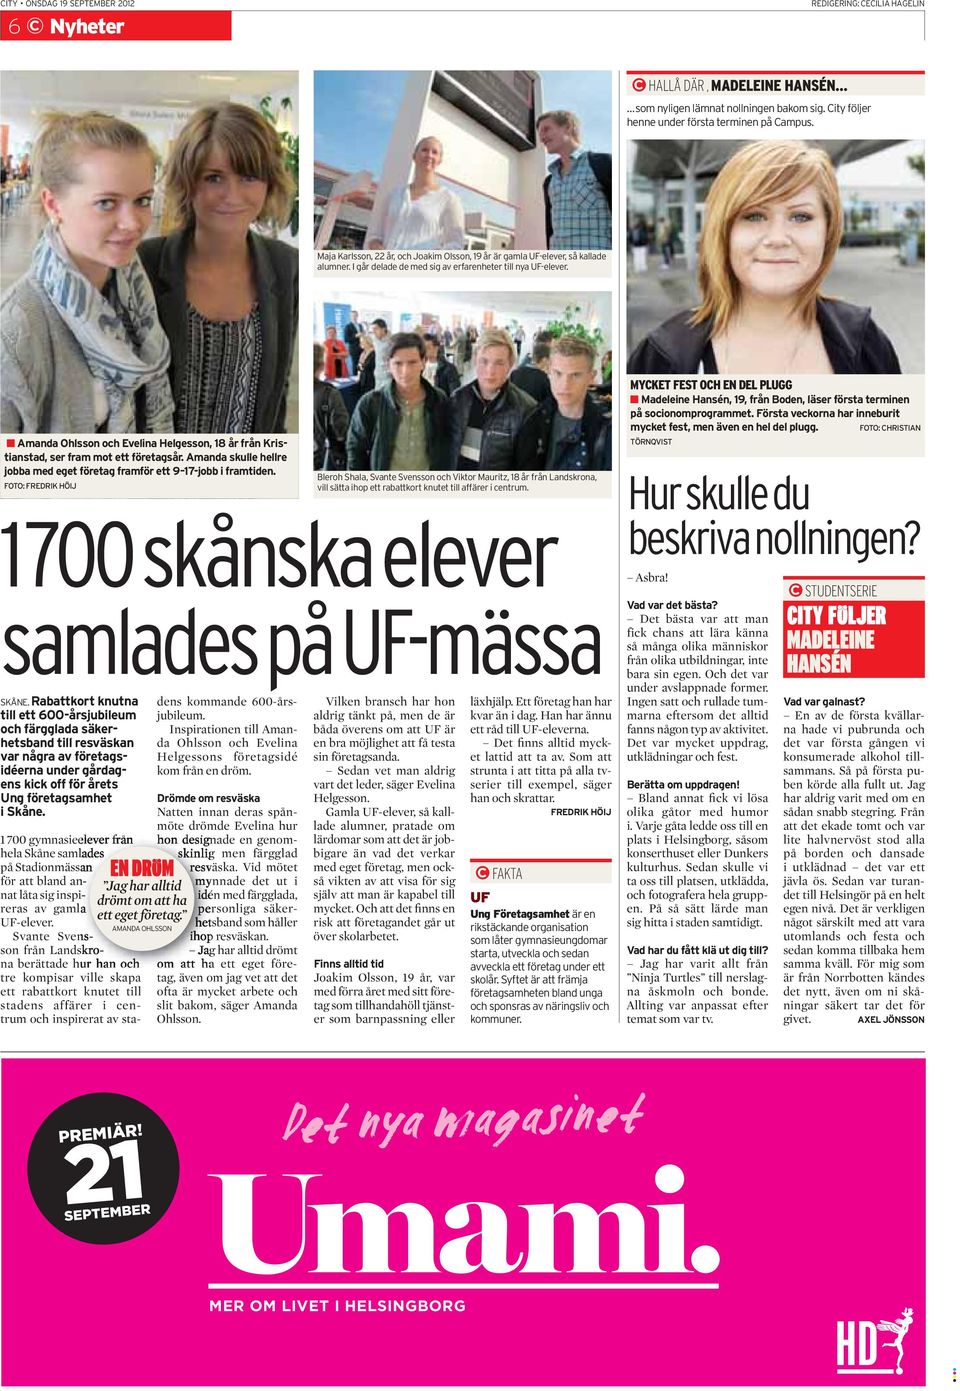 Amanda Ohlsson och Evelina Helgesson, 18 år från Kristianstad, ser fram mot ett företagsår. Amanda skulle hellre jobba med eget företag framför ett 9 17-jobb i framtiden.